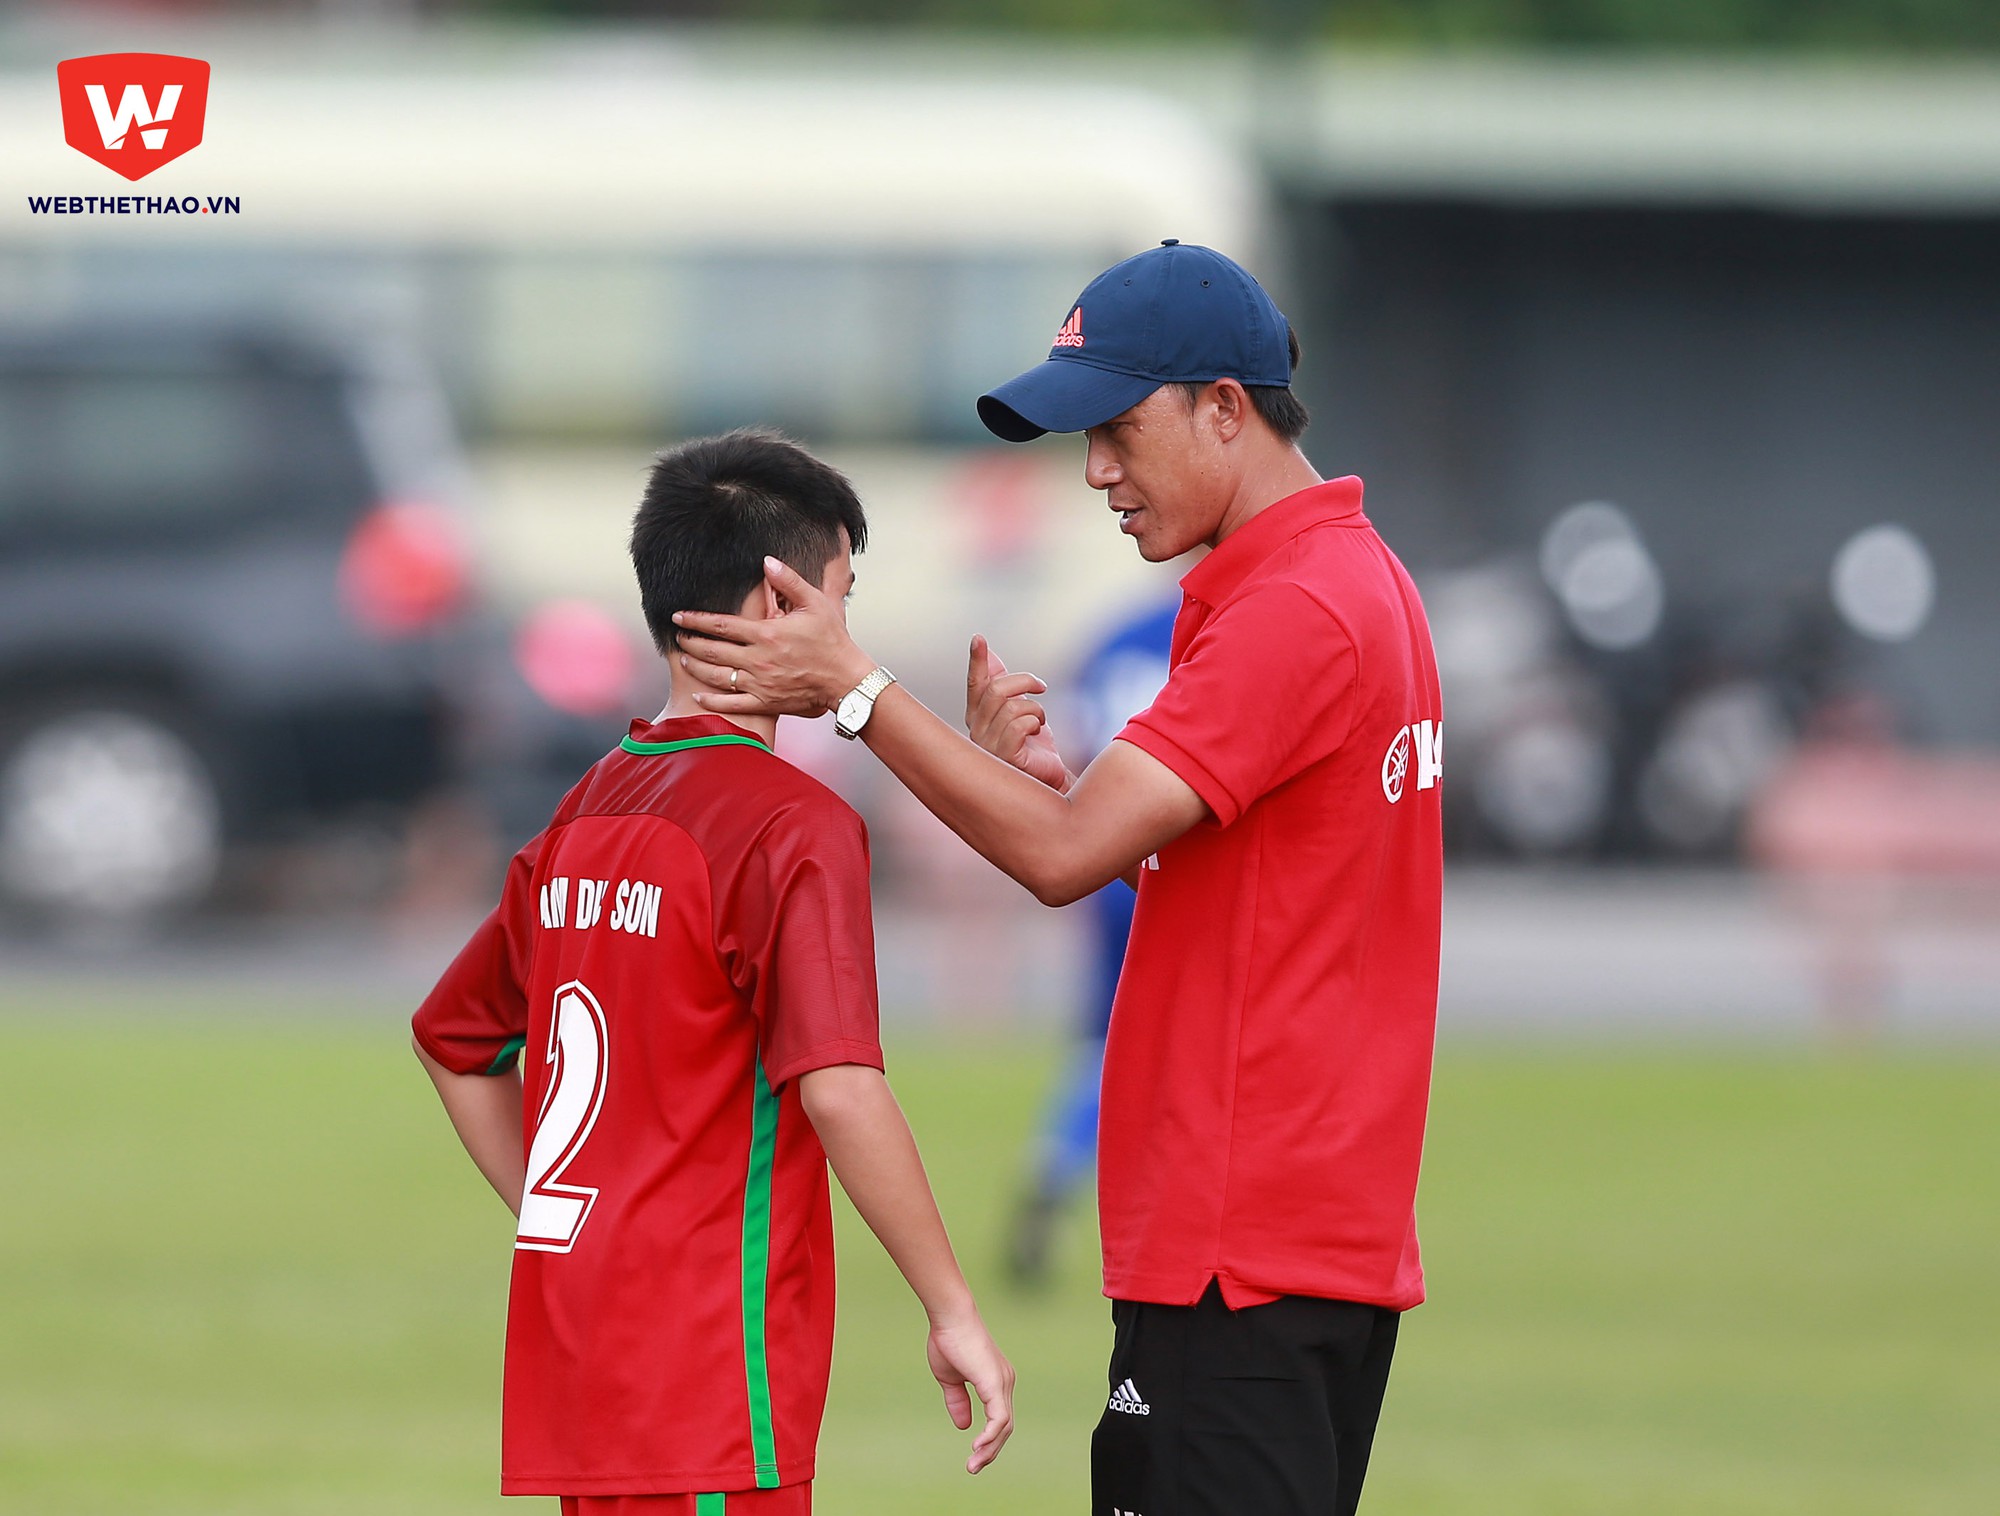 HLV Thành Công nhắc nhở học trò trước trận đấu.